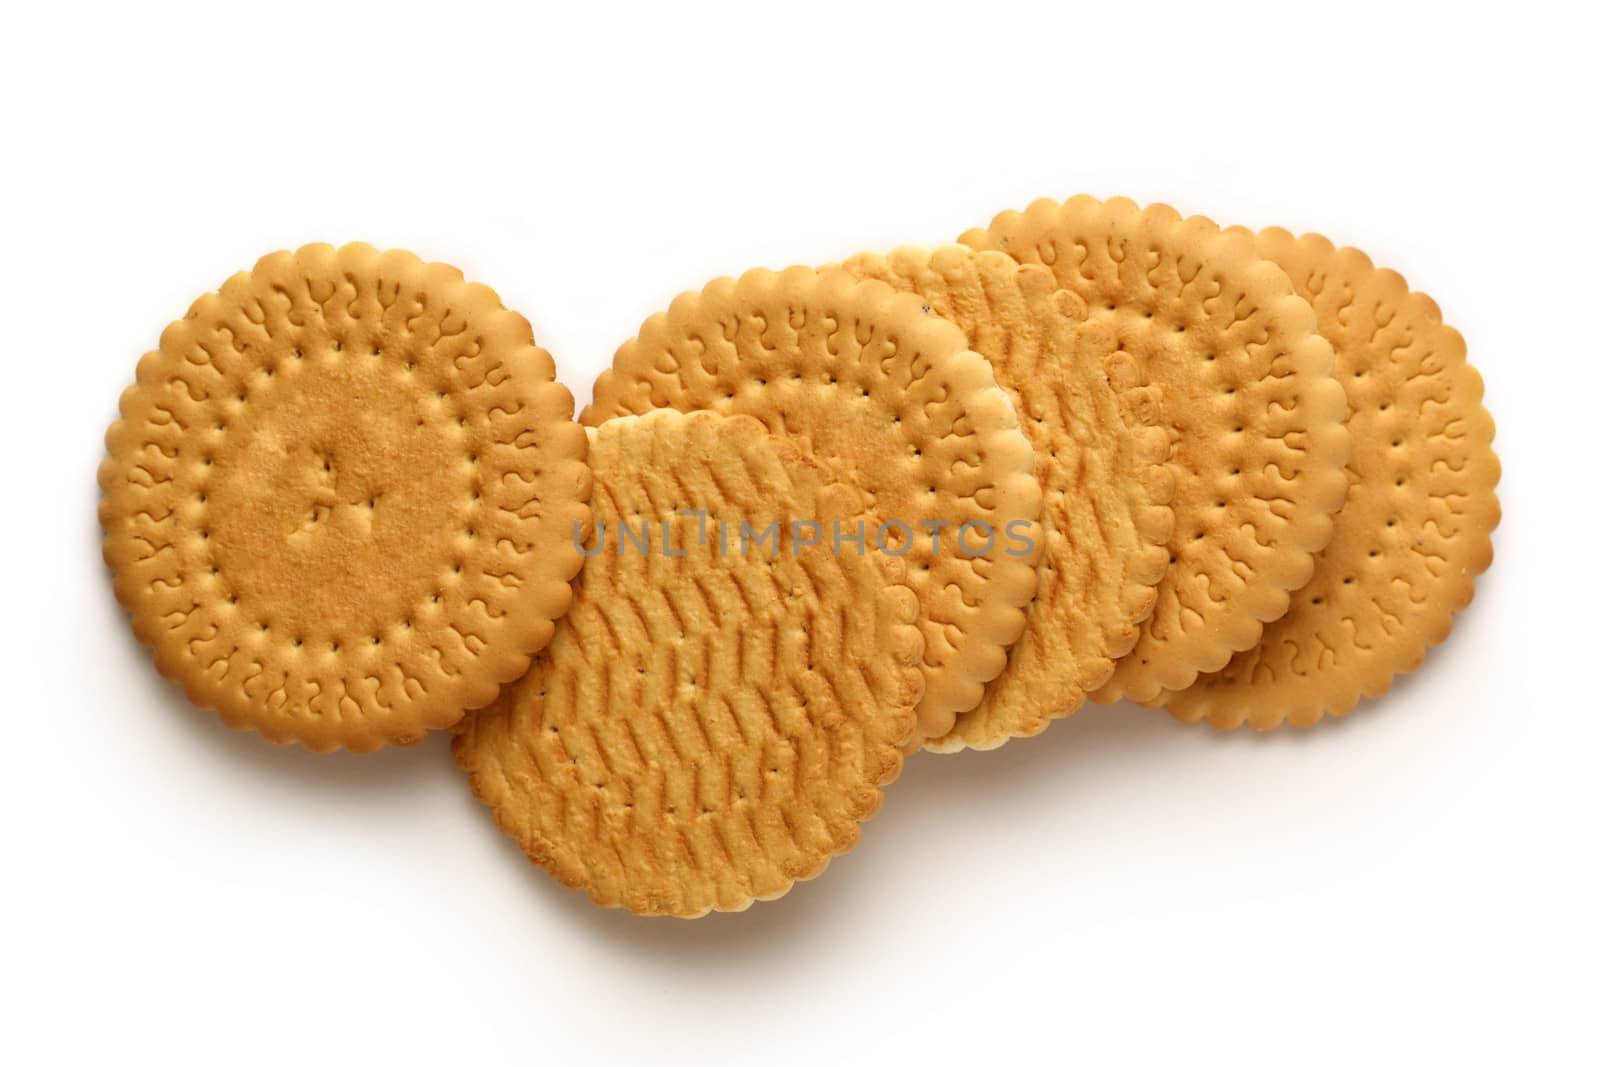 Round biscuits on white background by Garsya